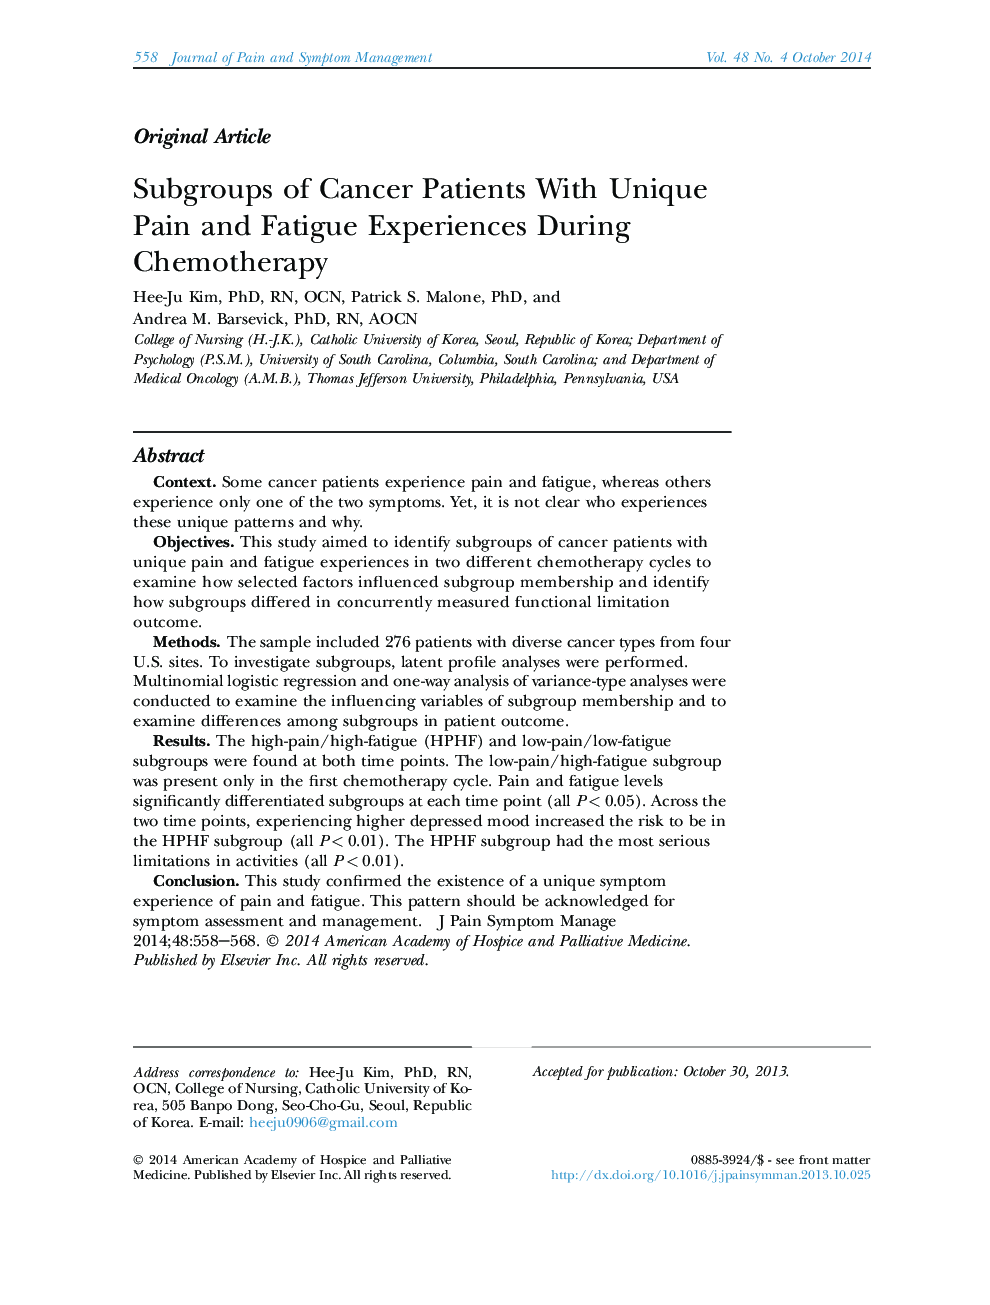 مقالات اصلی گروه های مبتلا به سرطان با تجربه های منحصر به فرد درد و خستگی در طی شیمیدرمانی 